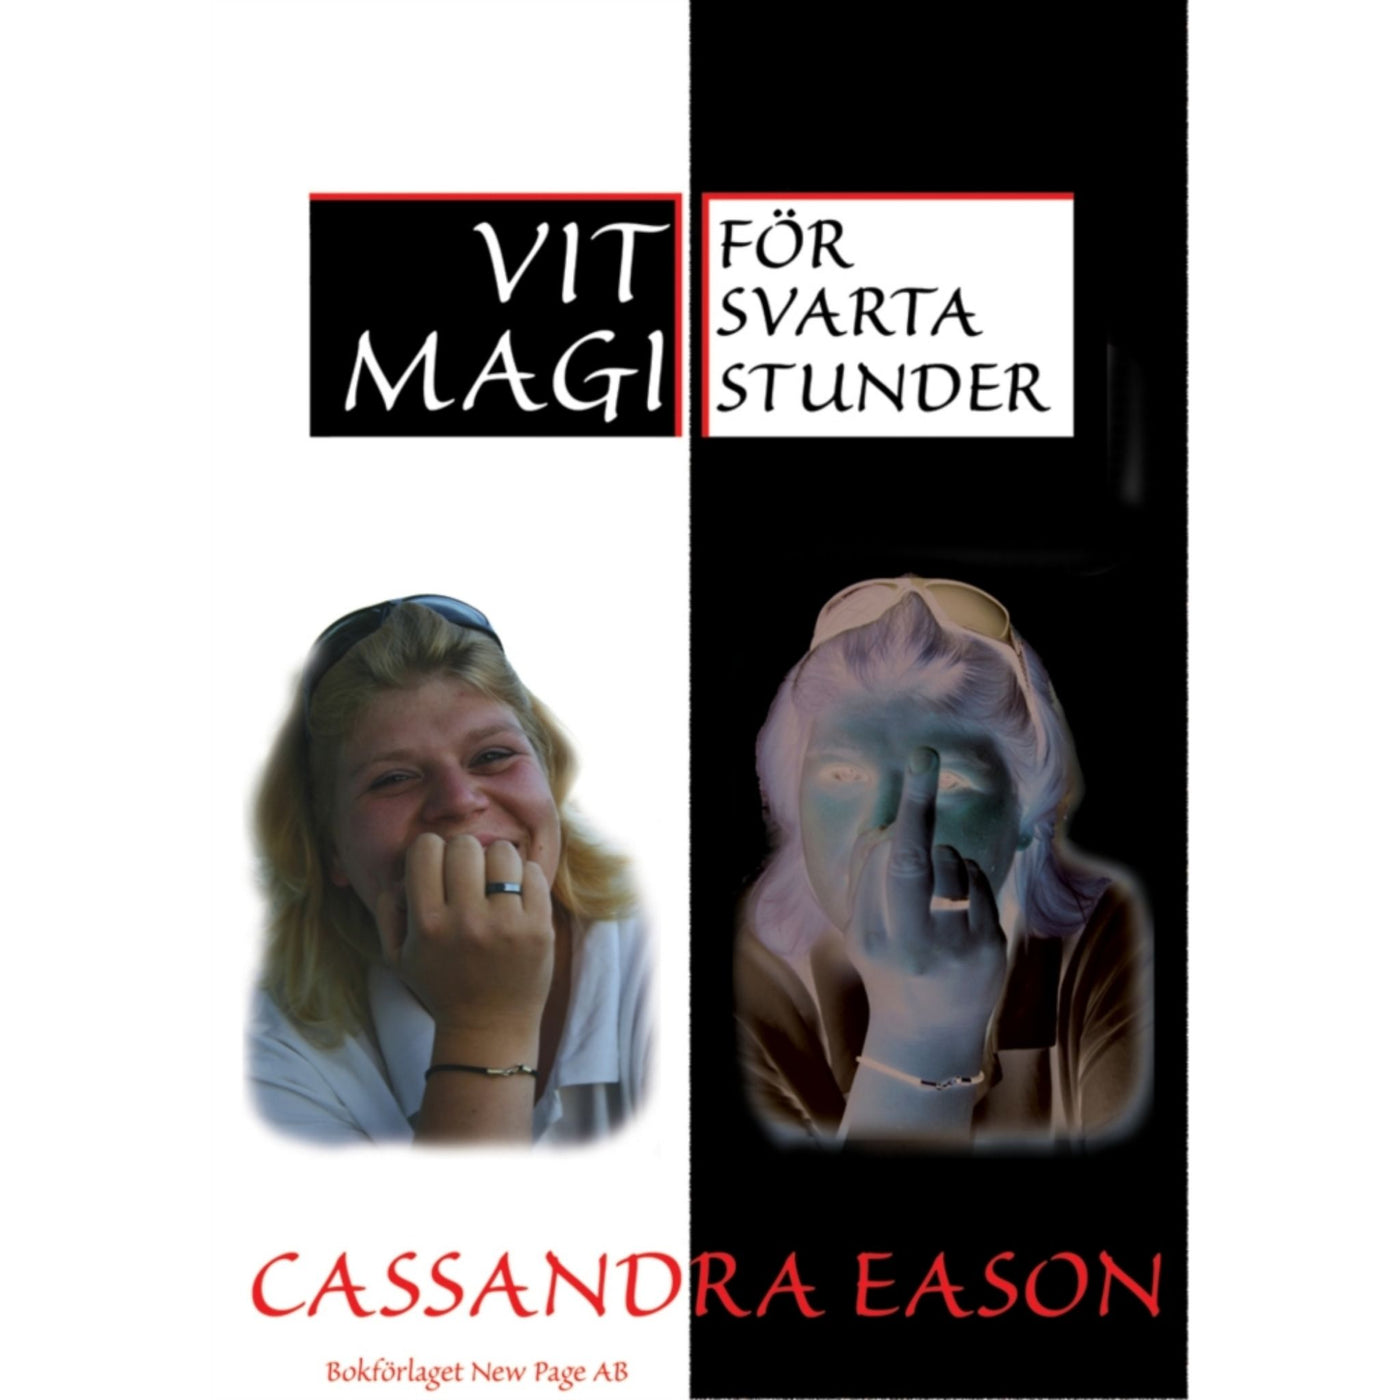 Vit magi för svarta stunder - Cassandra Eason